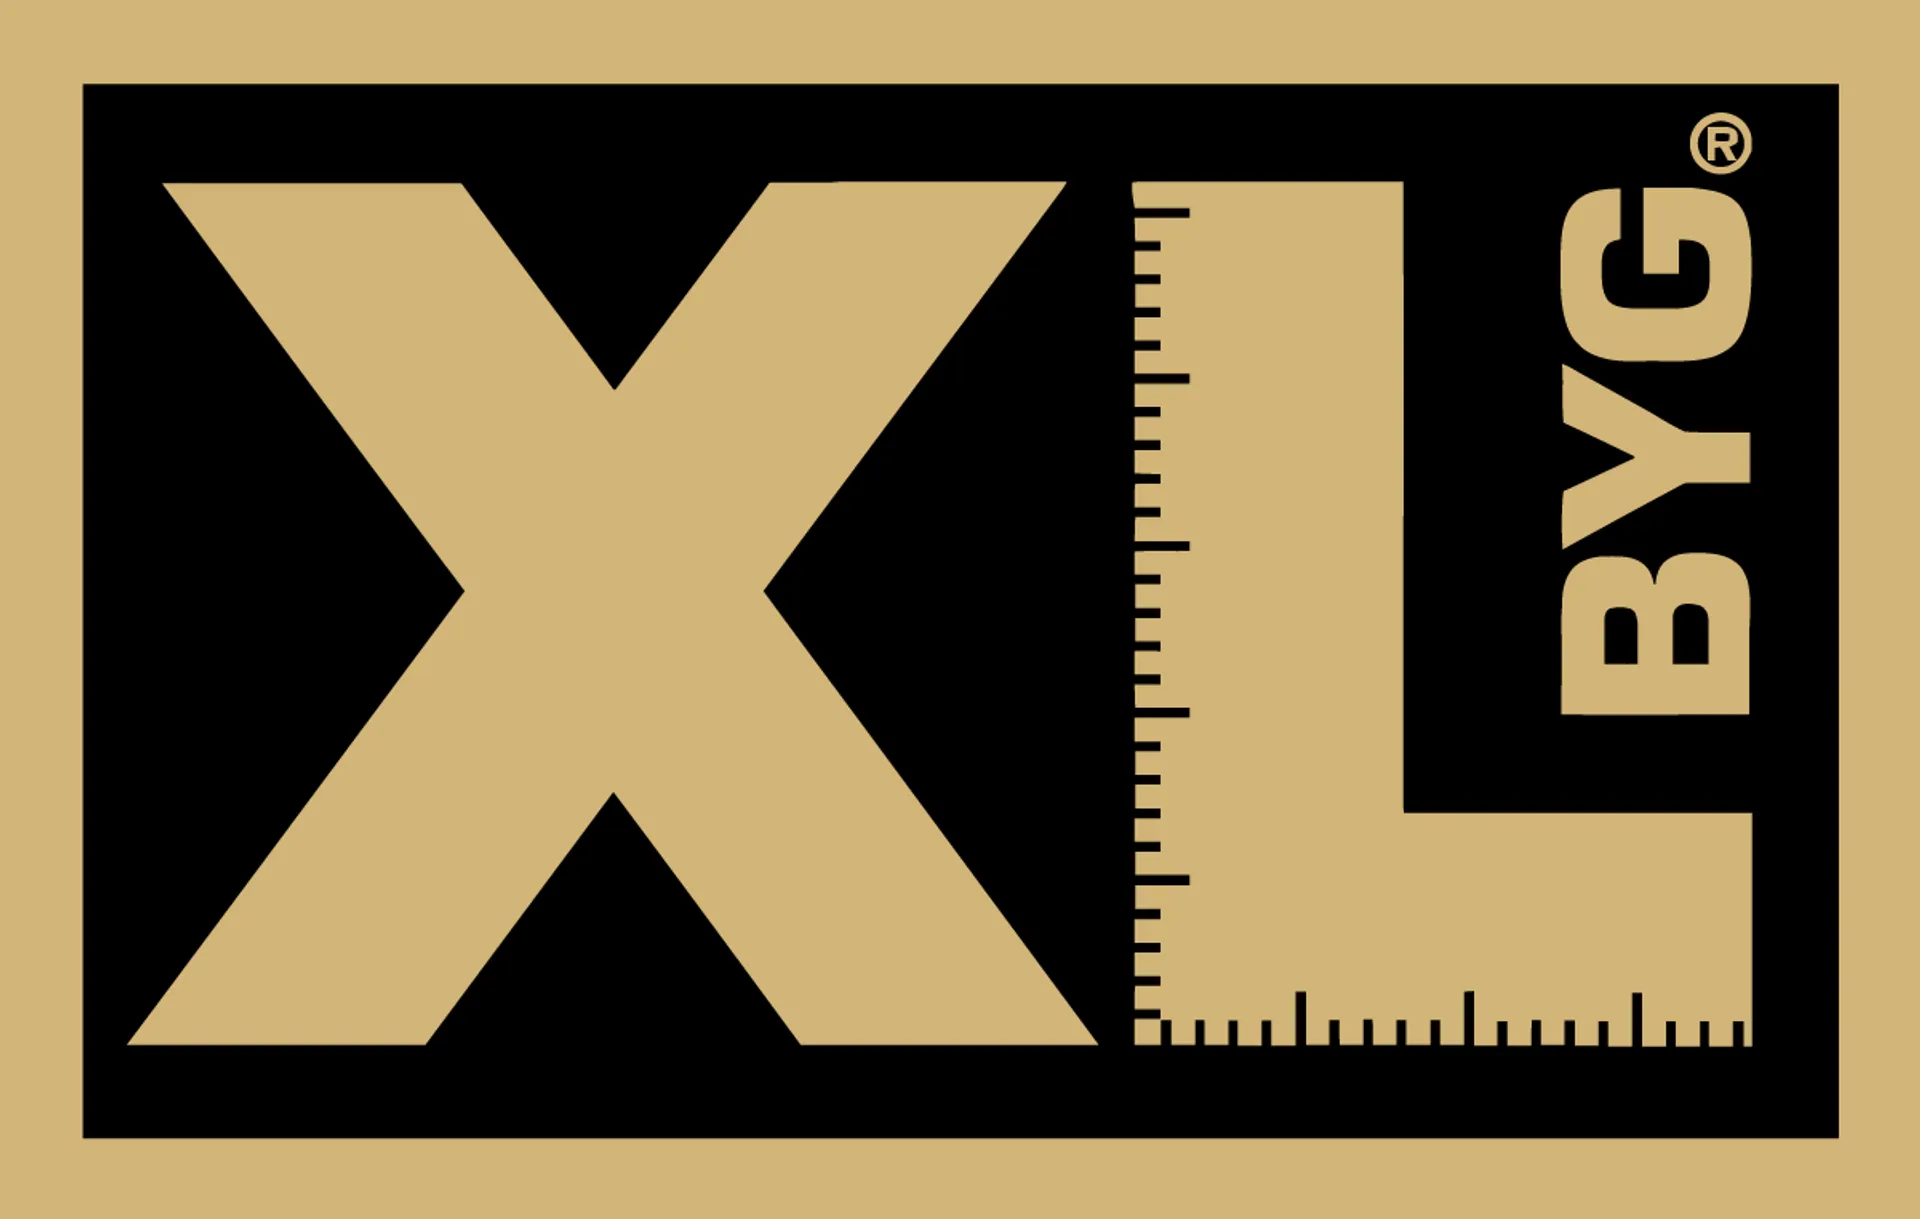 XL-BYG logo